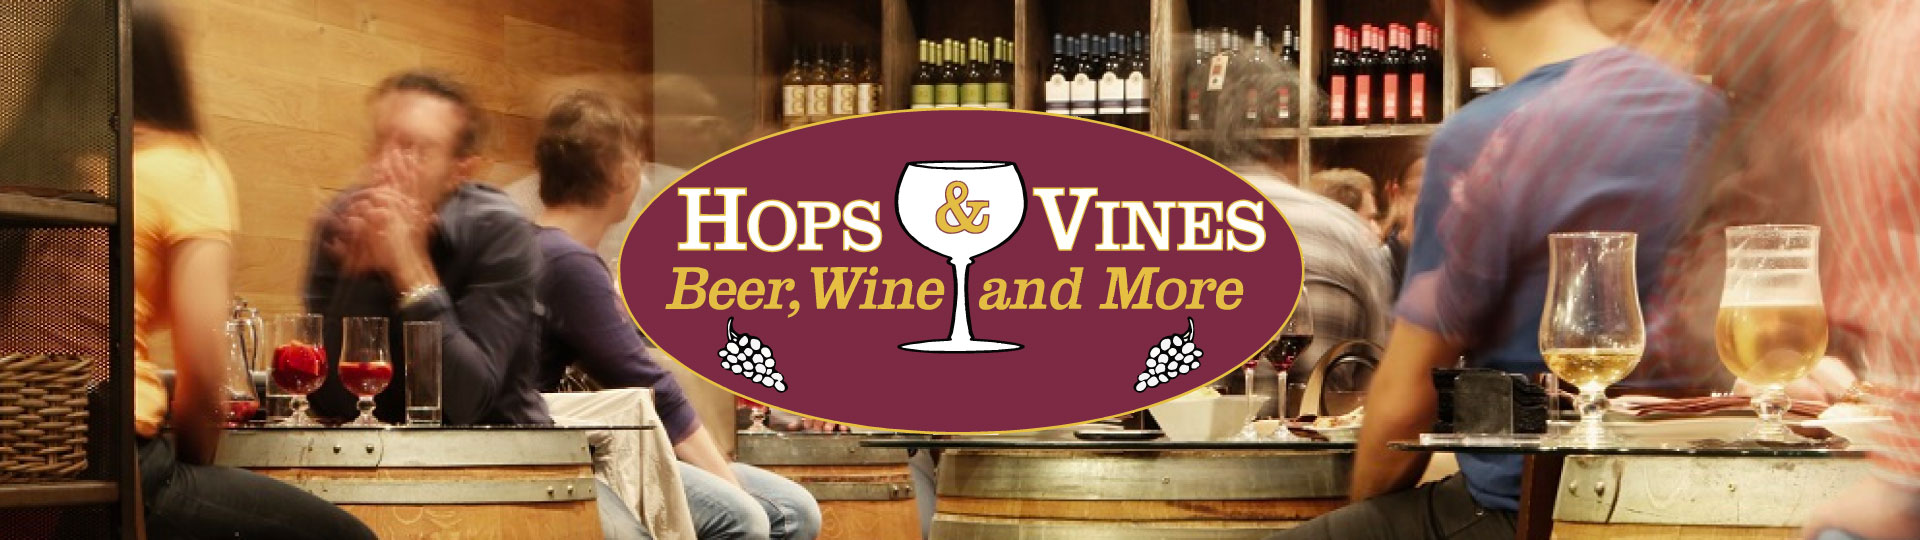 Hops & Vines Beer, Wine & More